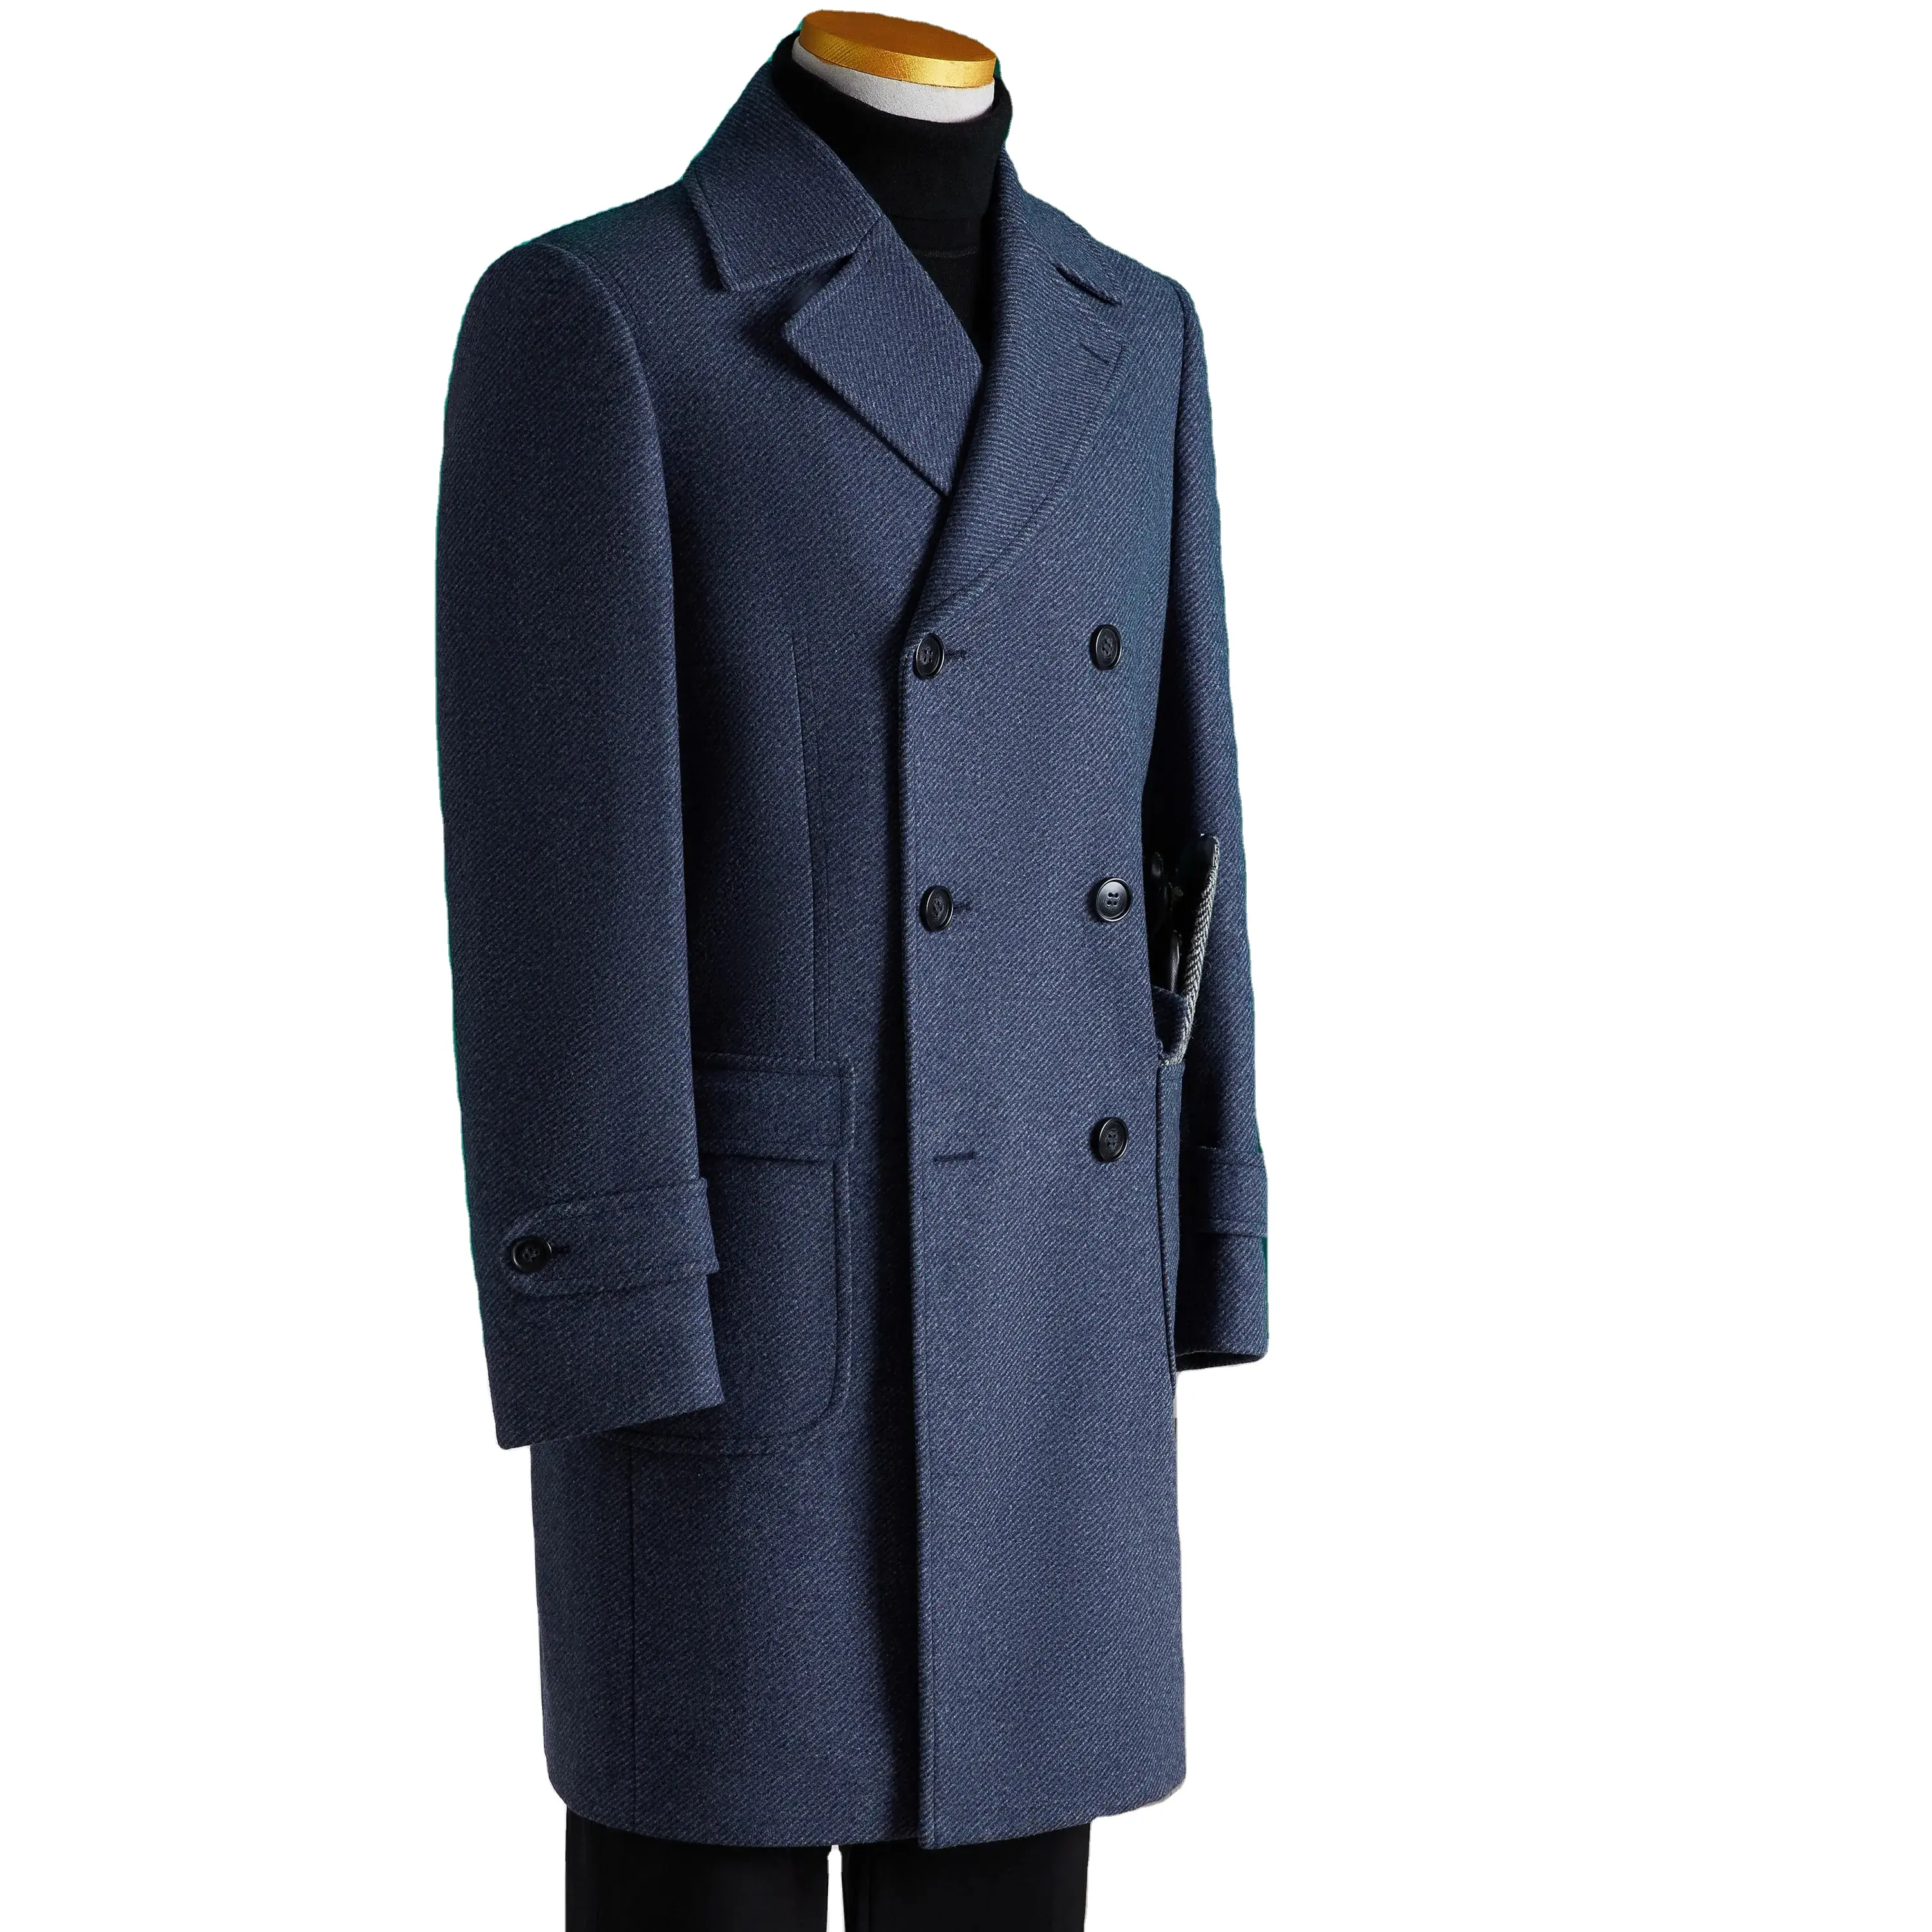 Yeni varış uzun rahat ceket özel erkek giyim yün örme ceket moda kış sıcak beyefendi ceket tutmak